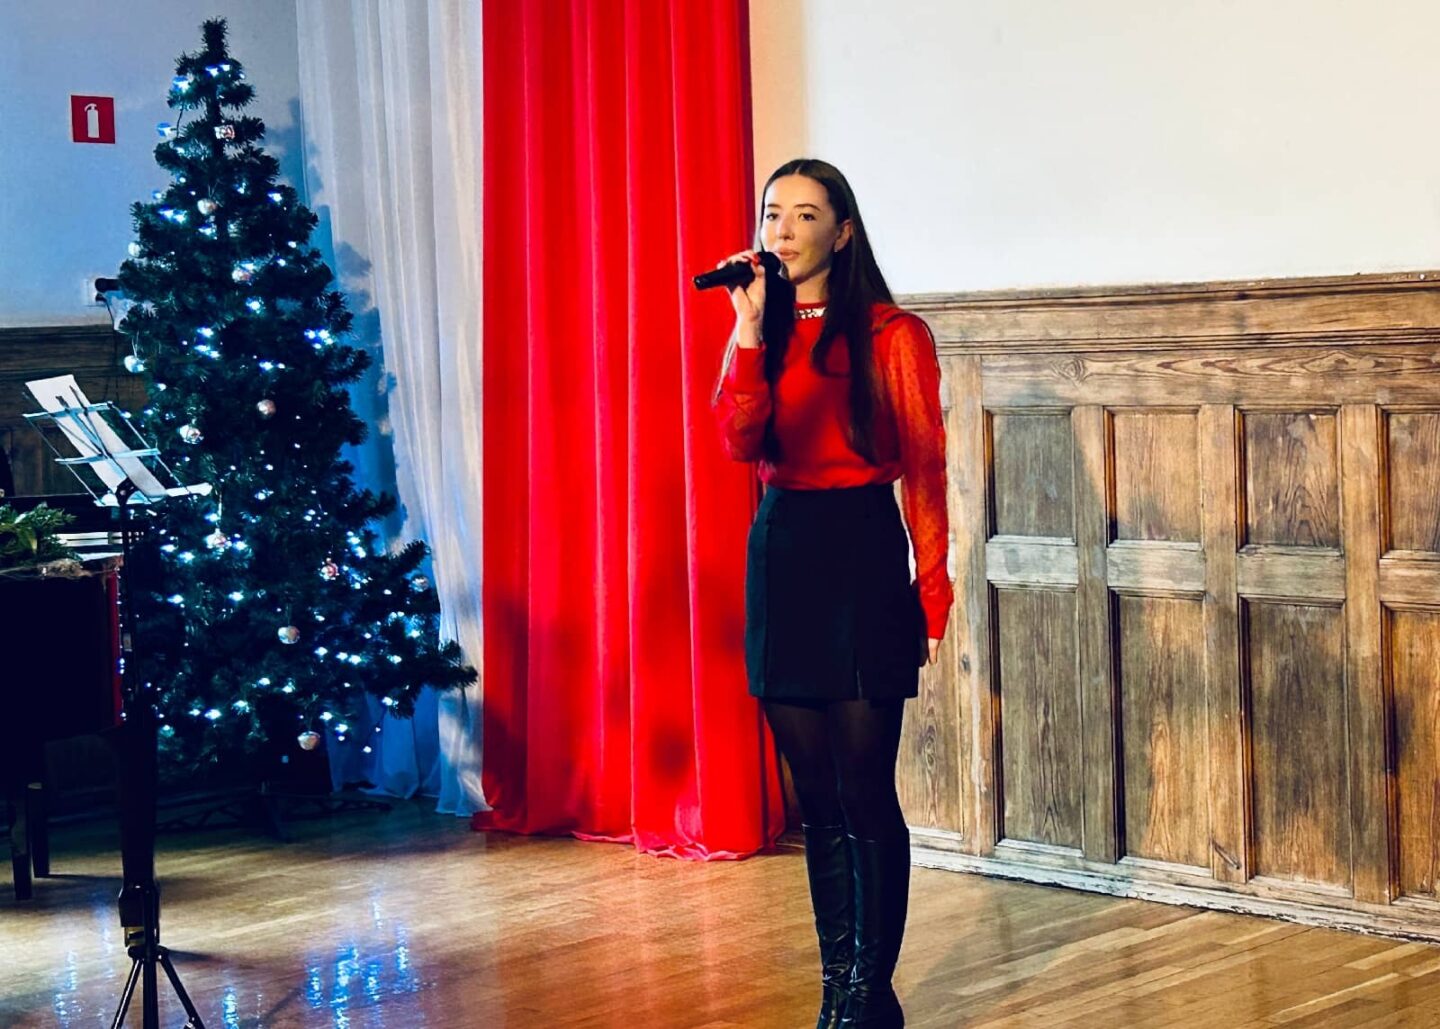 Za zdjęciu uczennica na scenie w szkolnej auli wykonuje utwór podczas świątecznego koncertu.